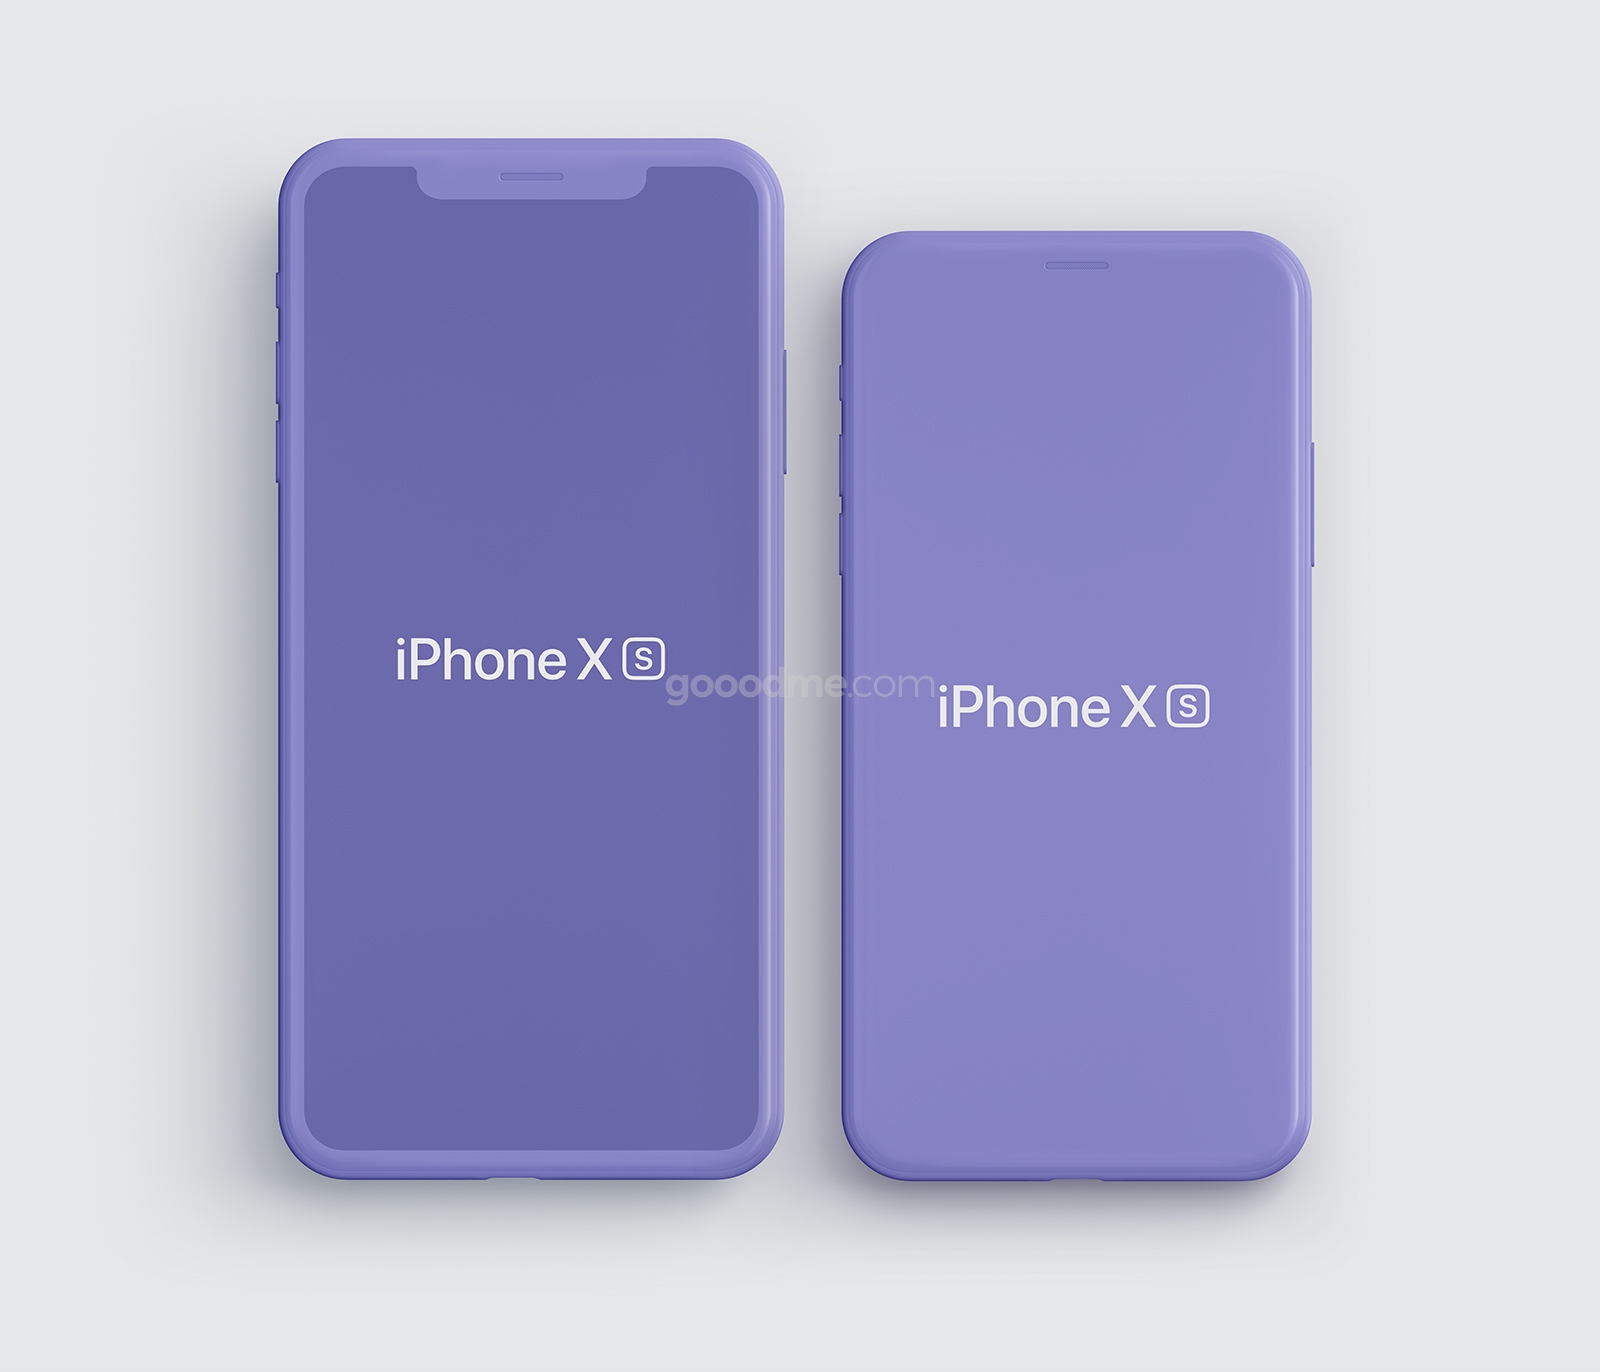 337 可商用iPhone XS手机屏幕展示UI样机素材 iPhone XS, iPhone XS Max Mockups